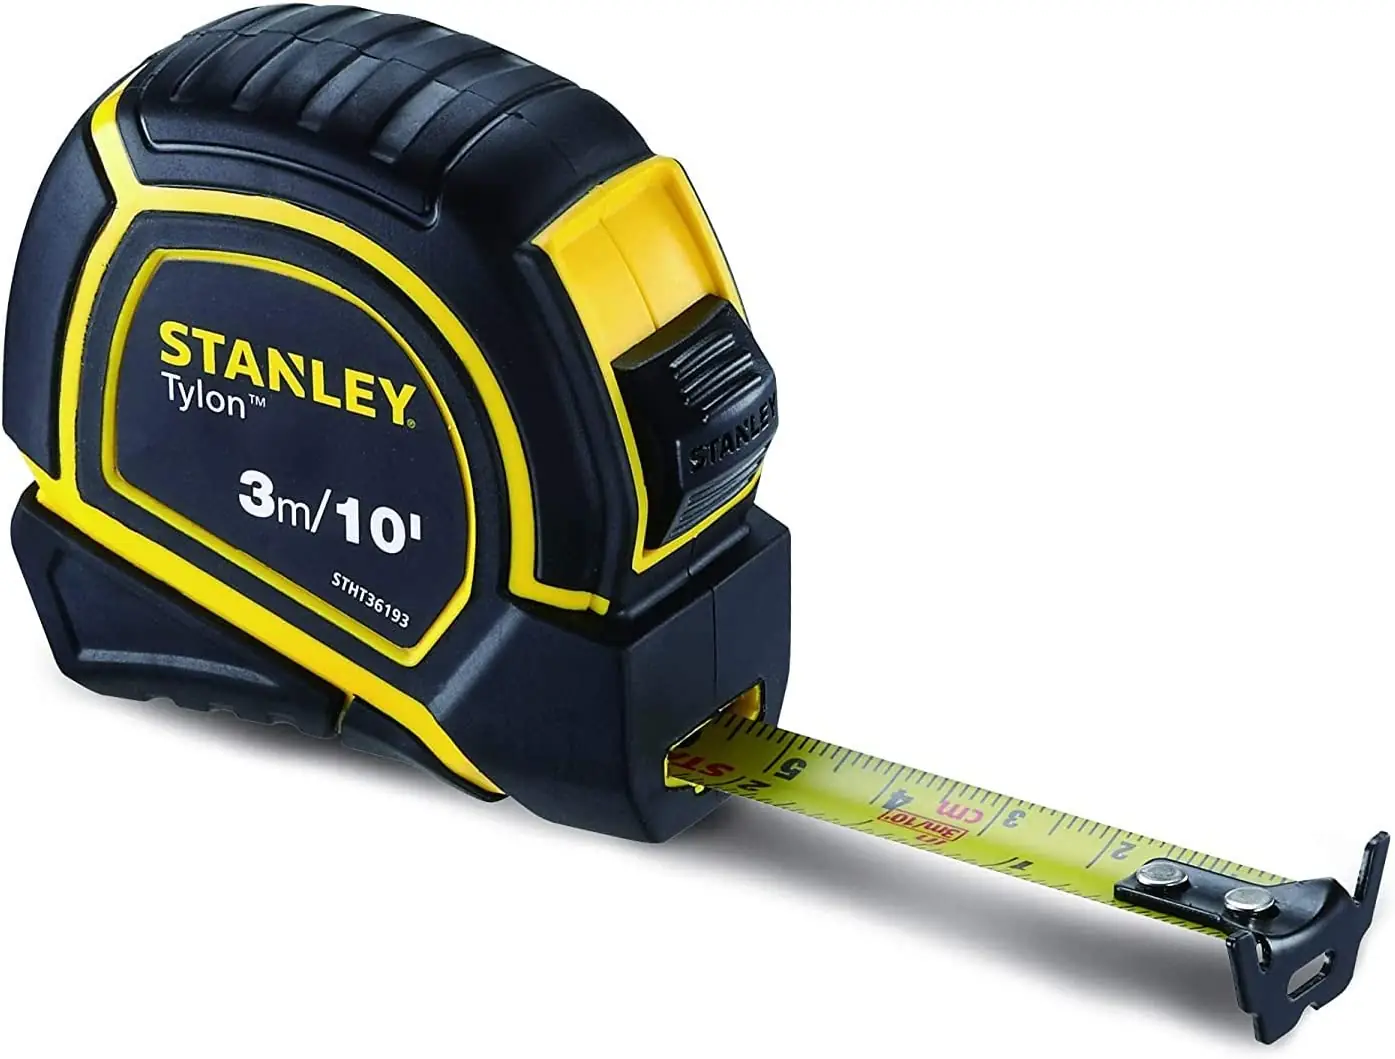 Stanley Tylon Short Tape Measure 3M/10' X 15Mm, Yellow/Black - Stht36193